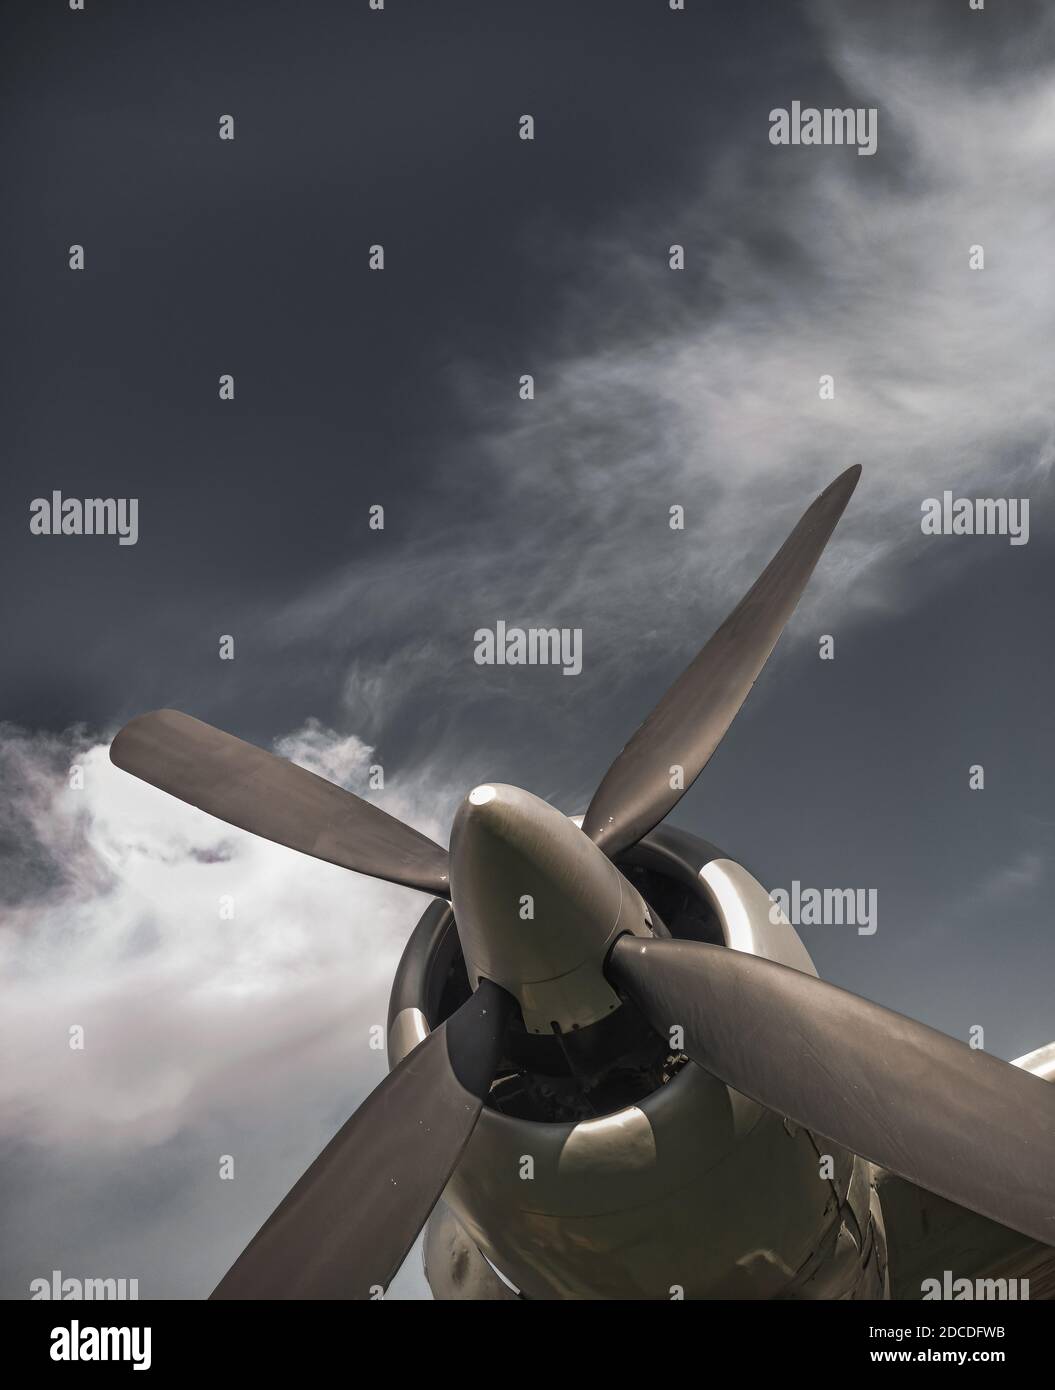 Alte Propeller Flugzeug, vintage Sepia schwarz und weiß Ton, vor dem Himmel Hintergrund. Propeller und Turbine Detail Stockfoto